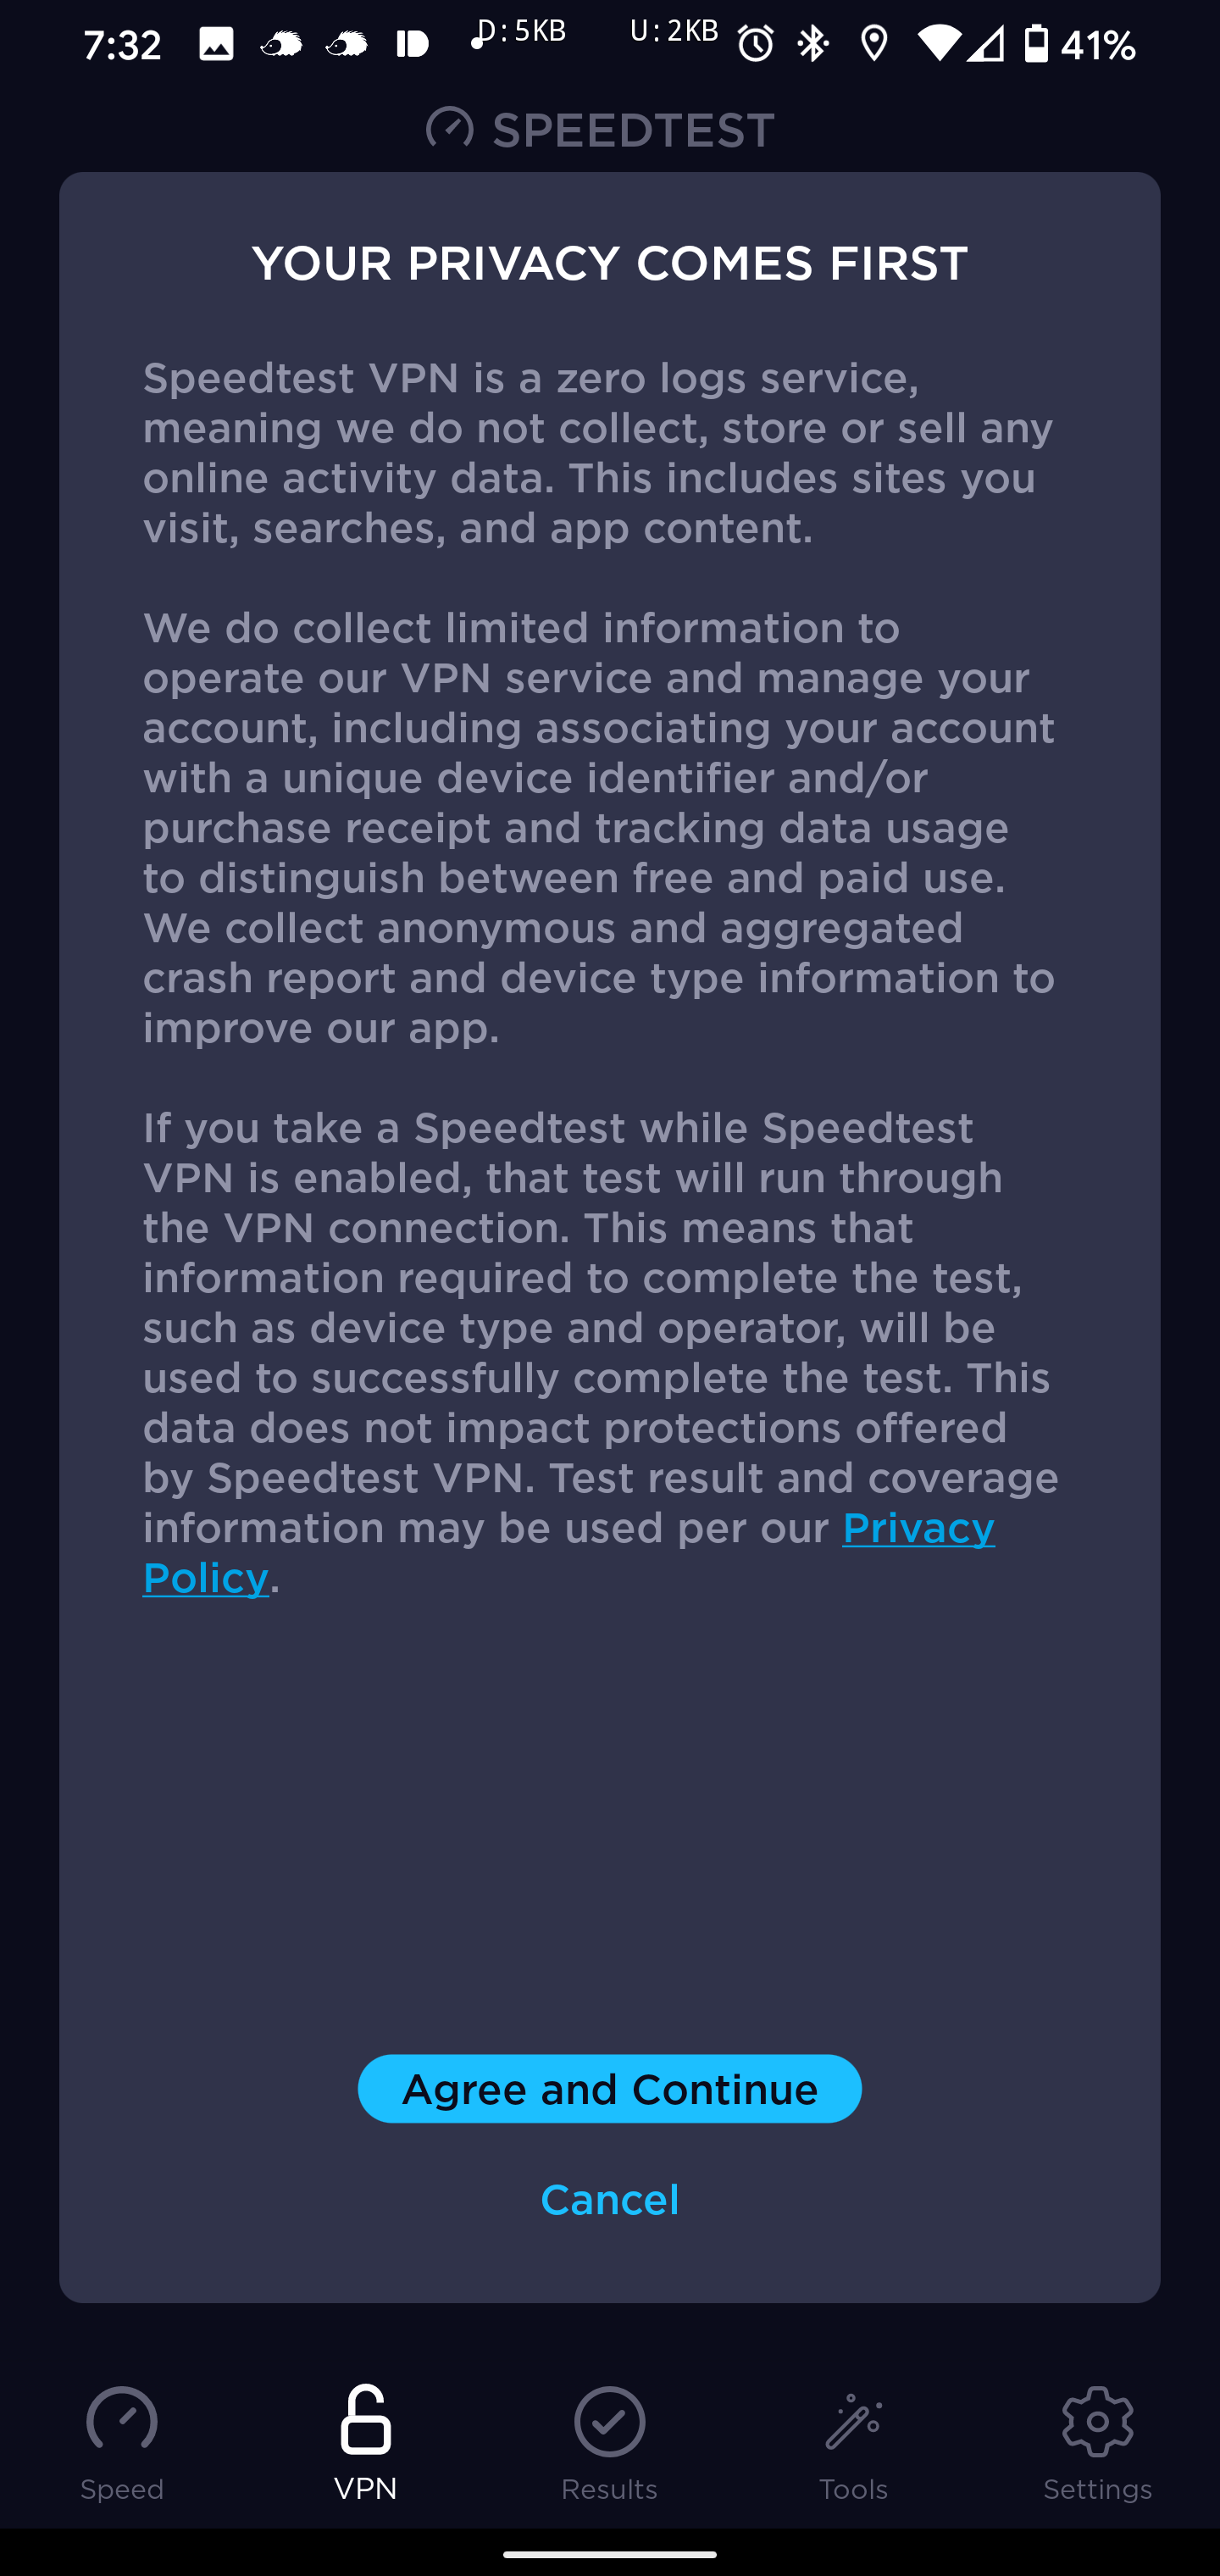 تطبيق Speedtest يأتي الآن بخدمة VPN على أندرويد و iOS